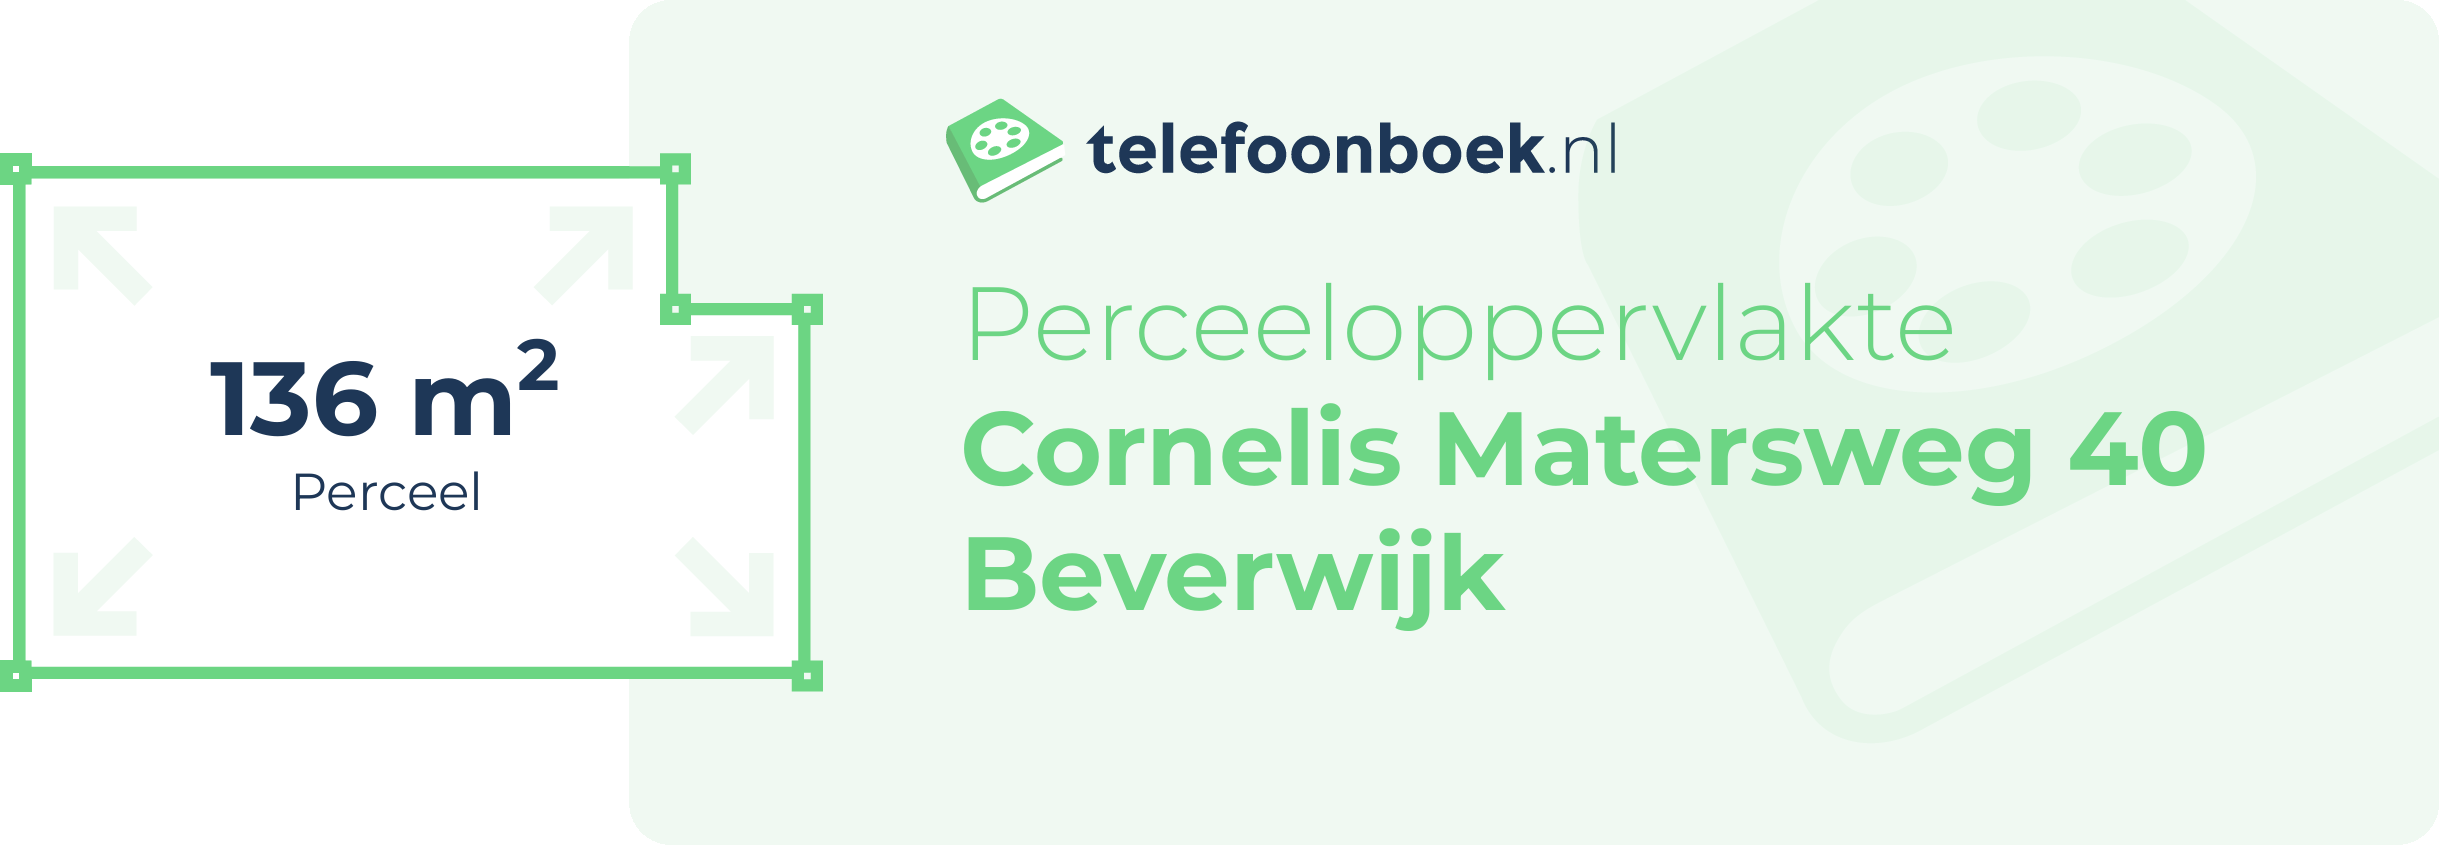 Perceeloppervlakte Cornelis Matersweg 40 Beverwijk